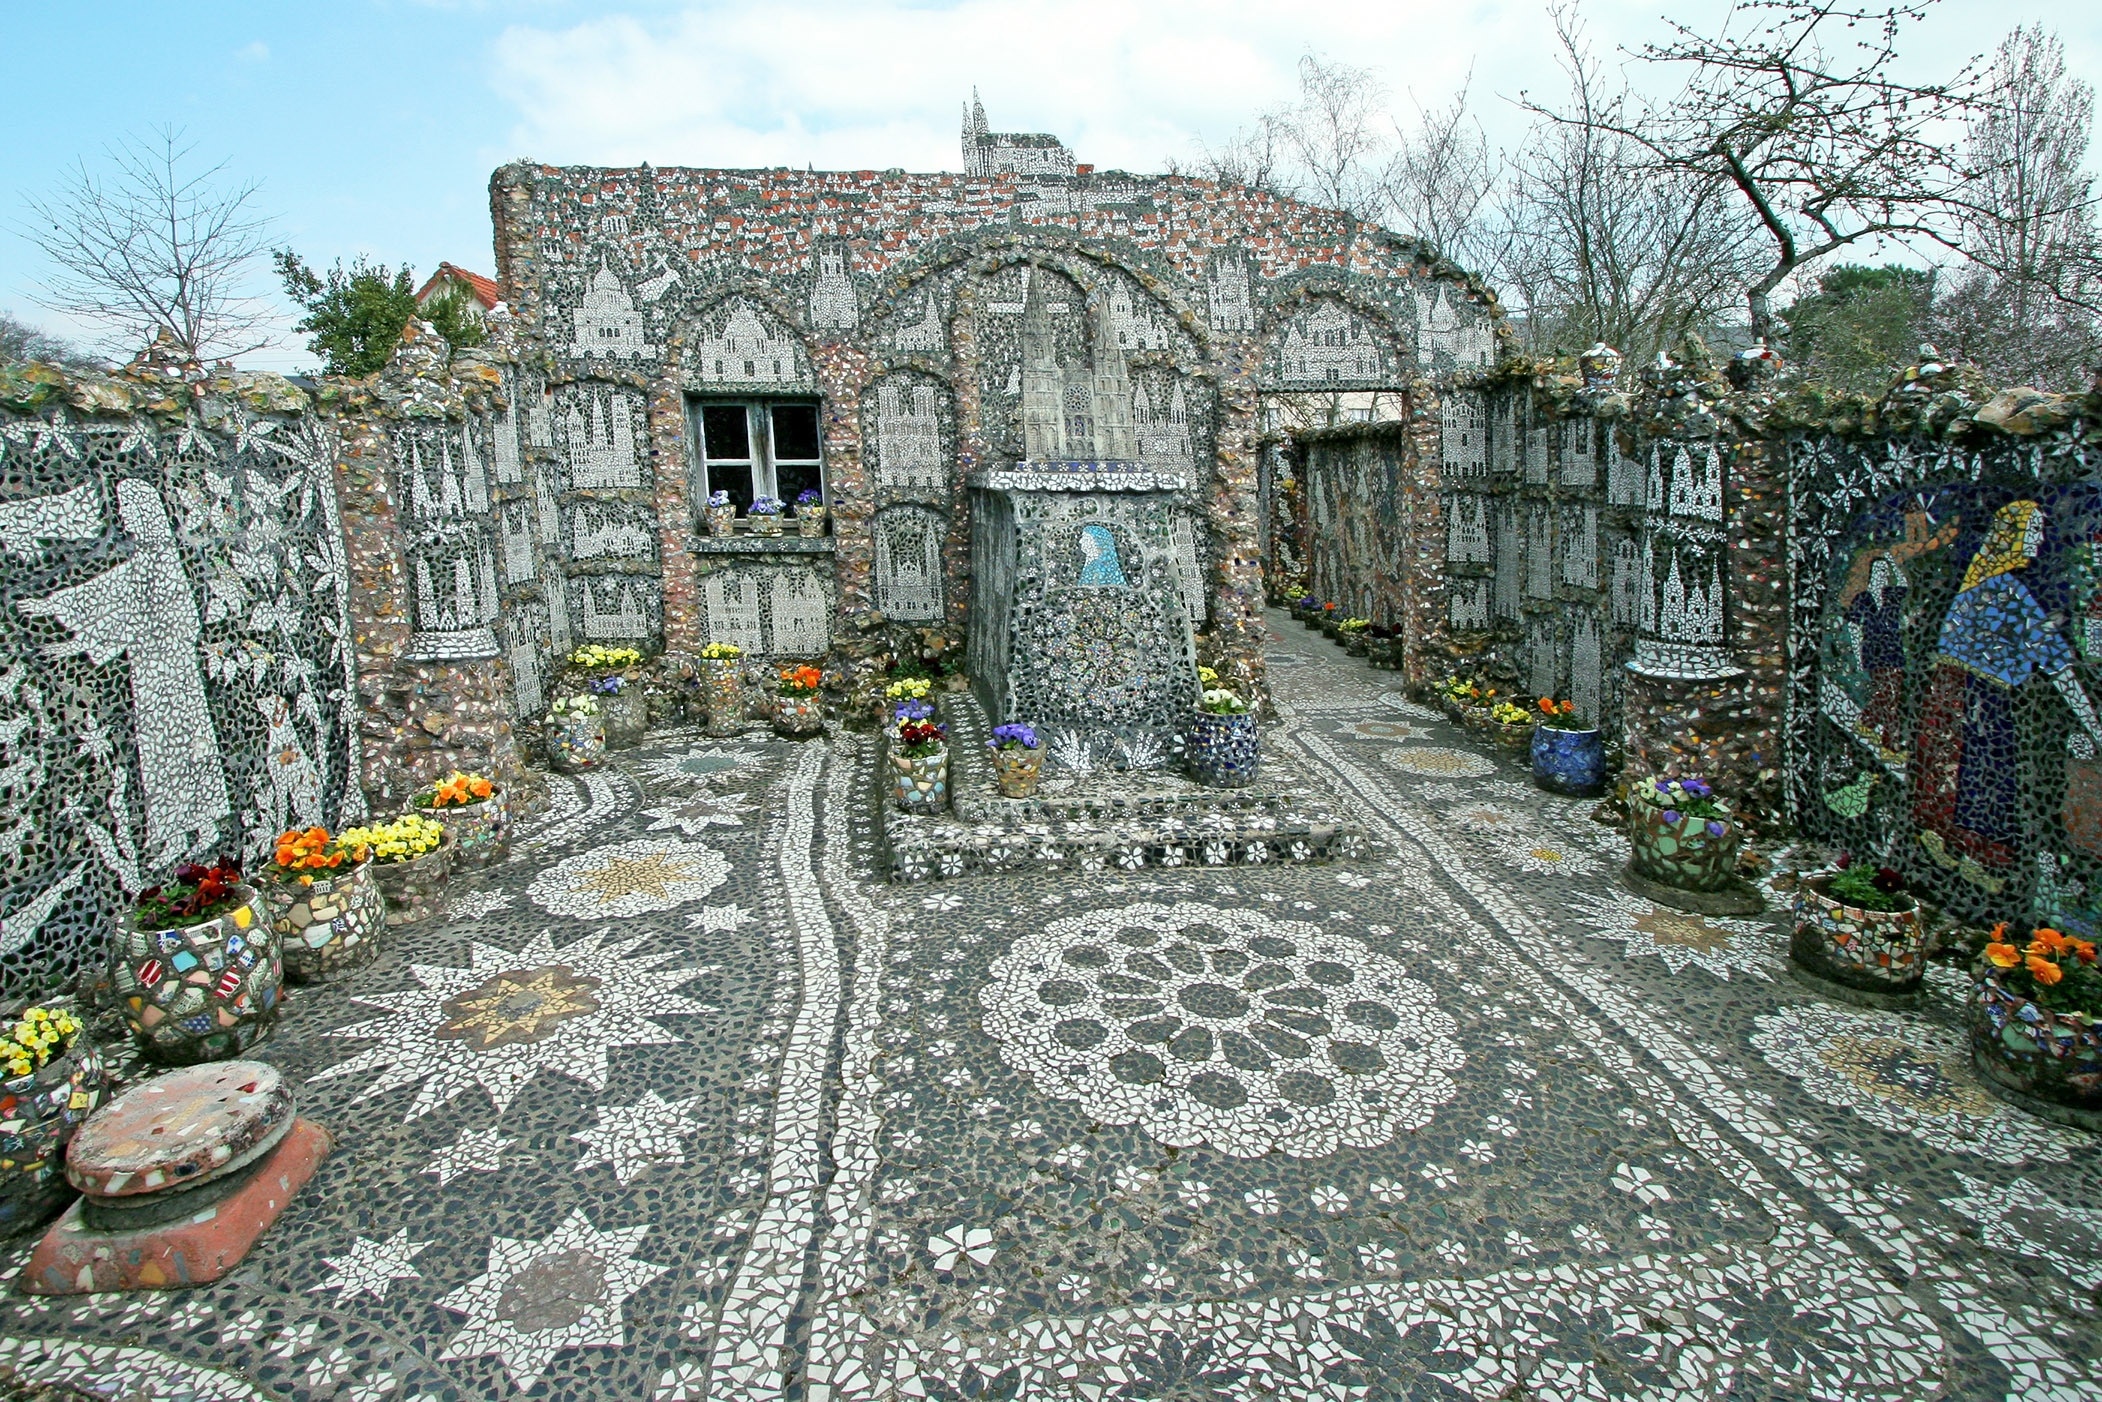 April 2006

La Maison Picassiette an amazing mosaic house in Chatres, France.